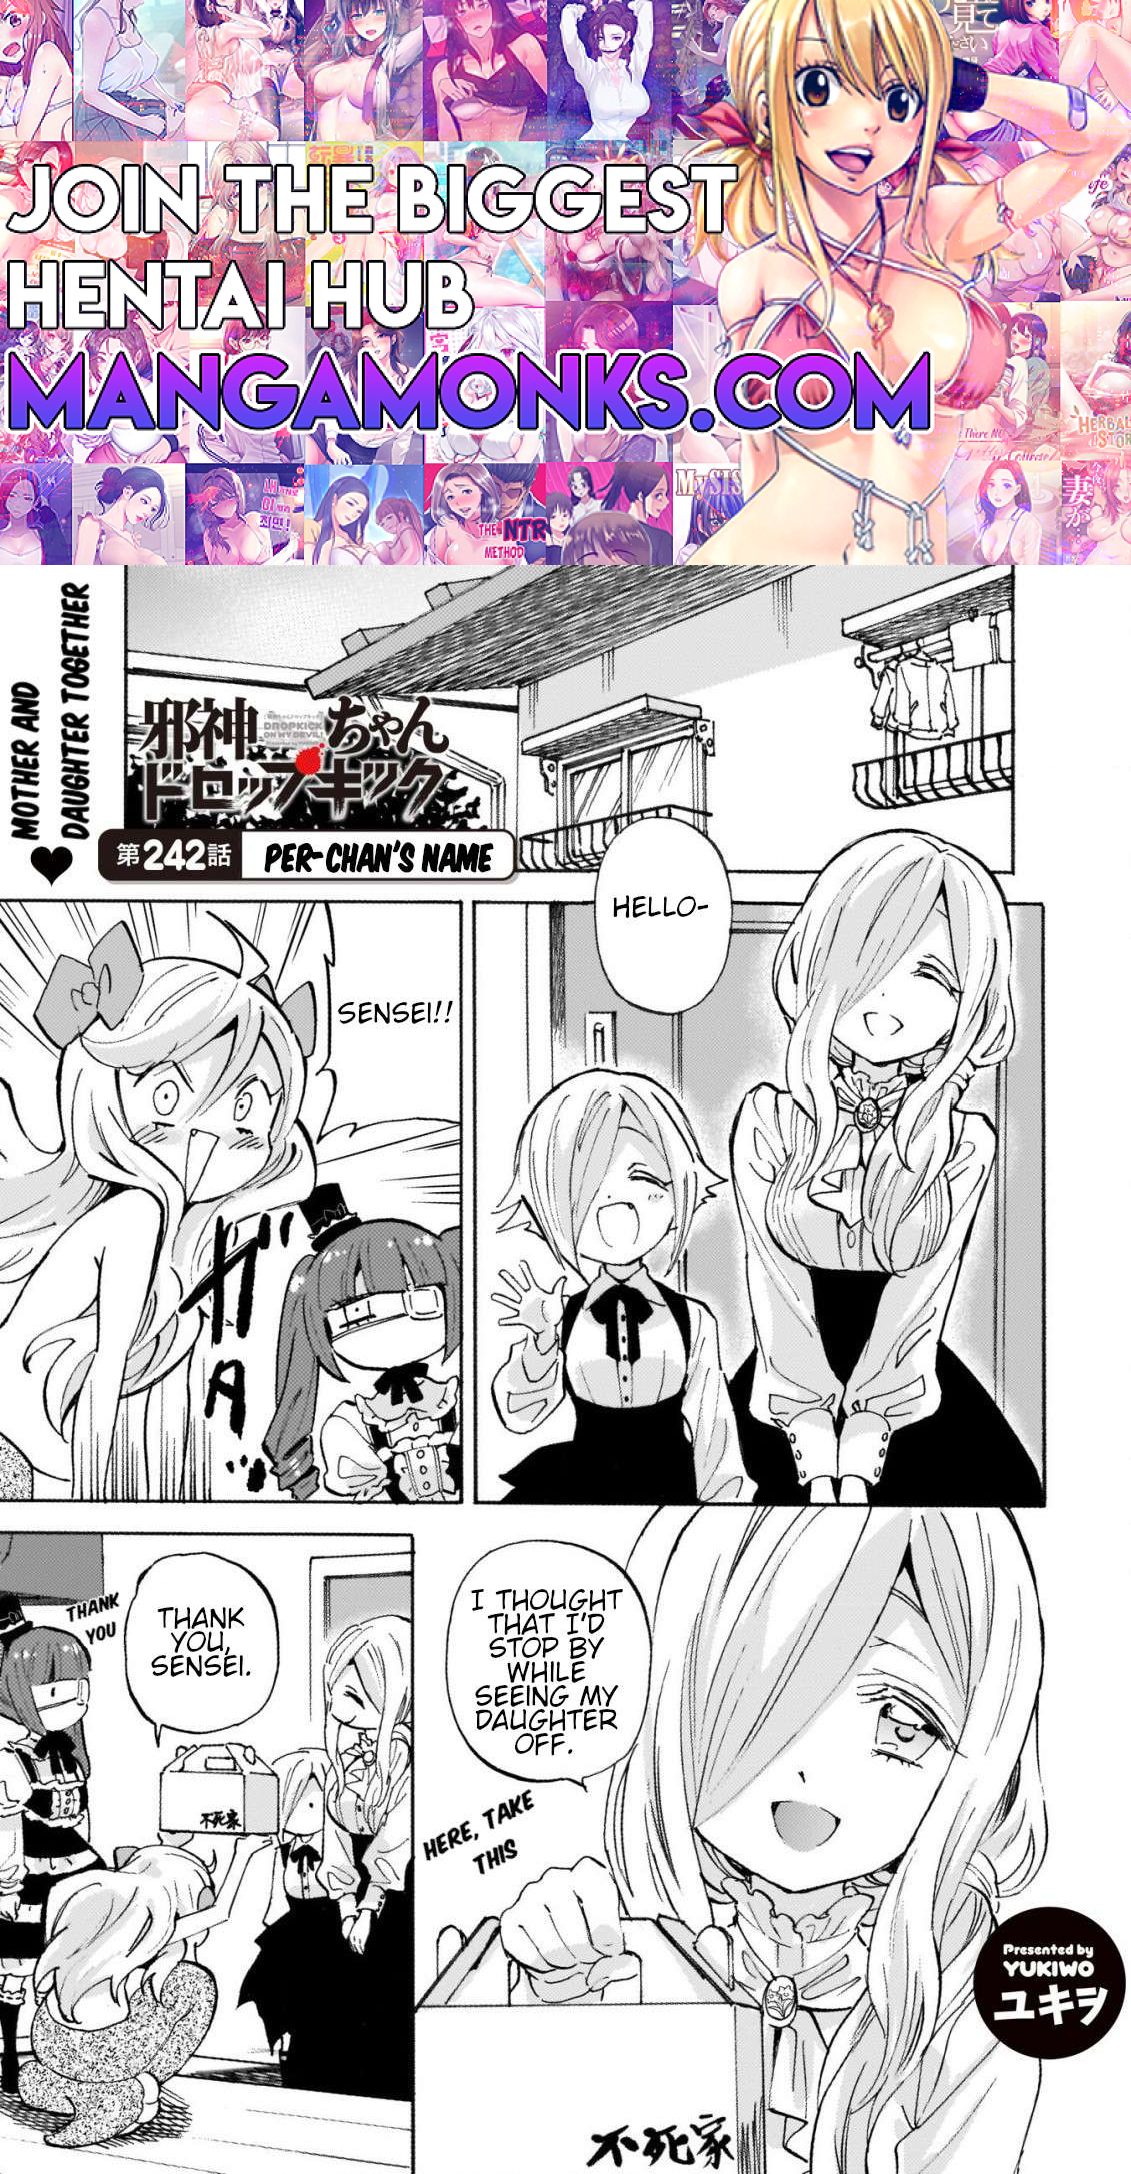 Jashin-chan Dropkick chapter 247 page 1